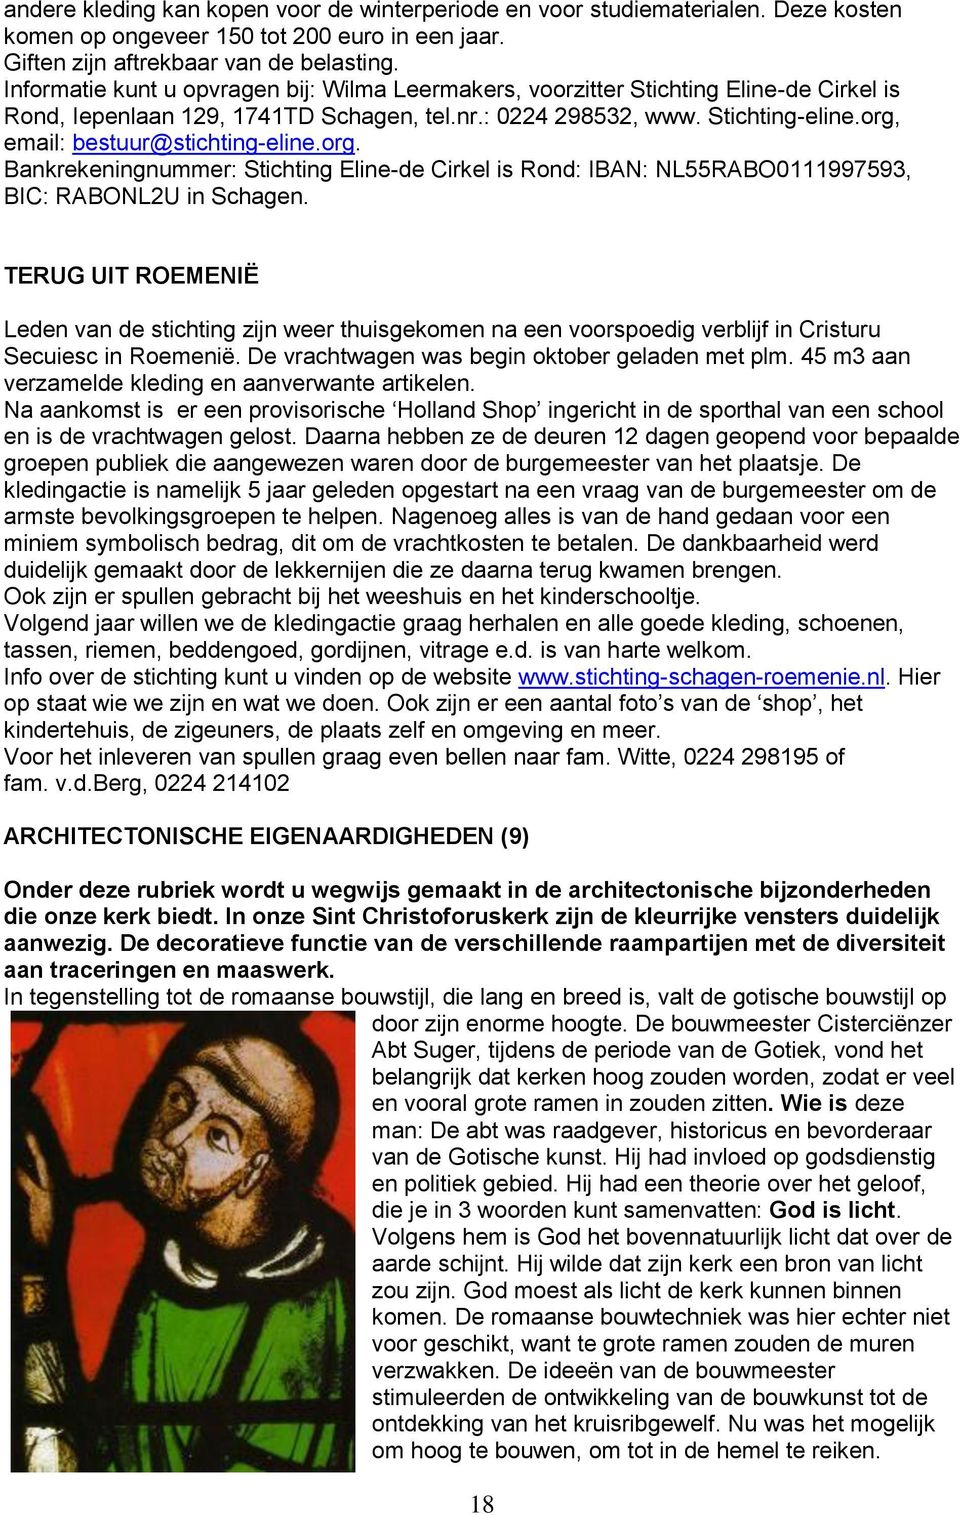 org, email: bestuur@stichting-eline.org. Bankrekeningnummer: Stichting Eline-de Cirkel is Rond: IBAN: NL55RABO0111997593, BIC: RABONL2U in Schagen.